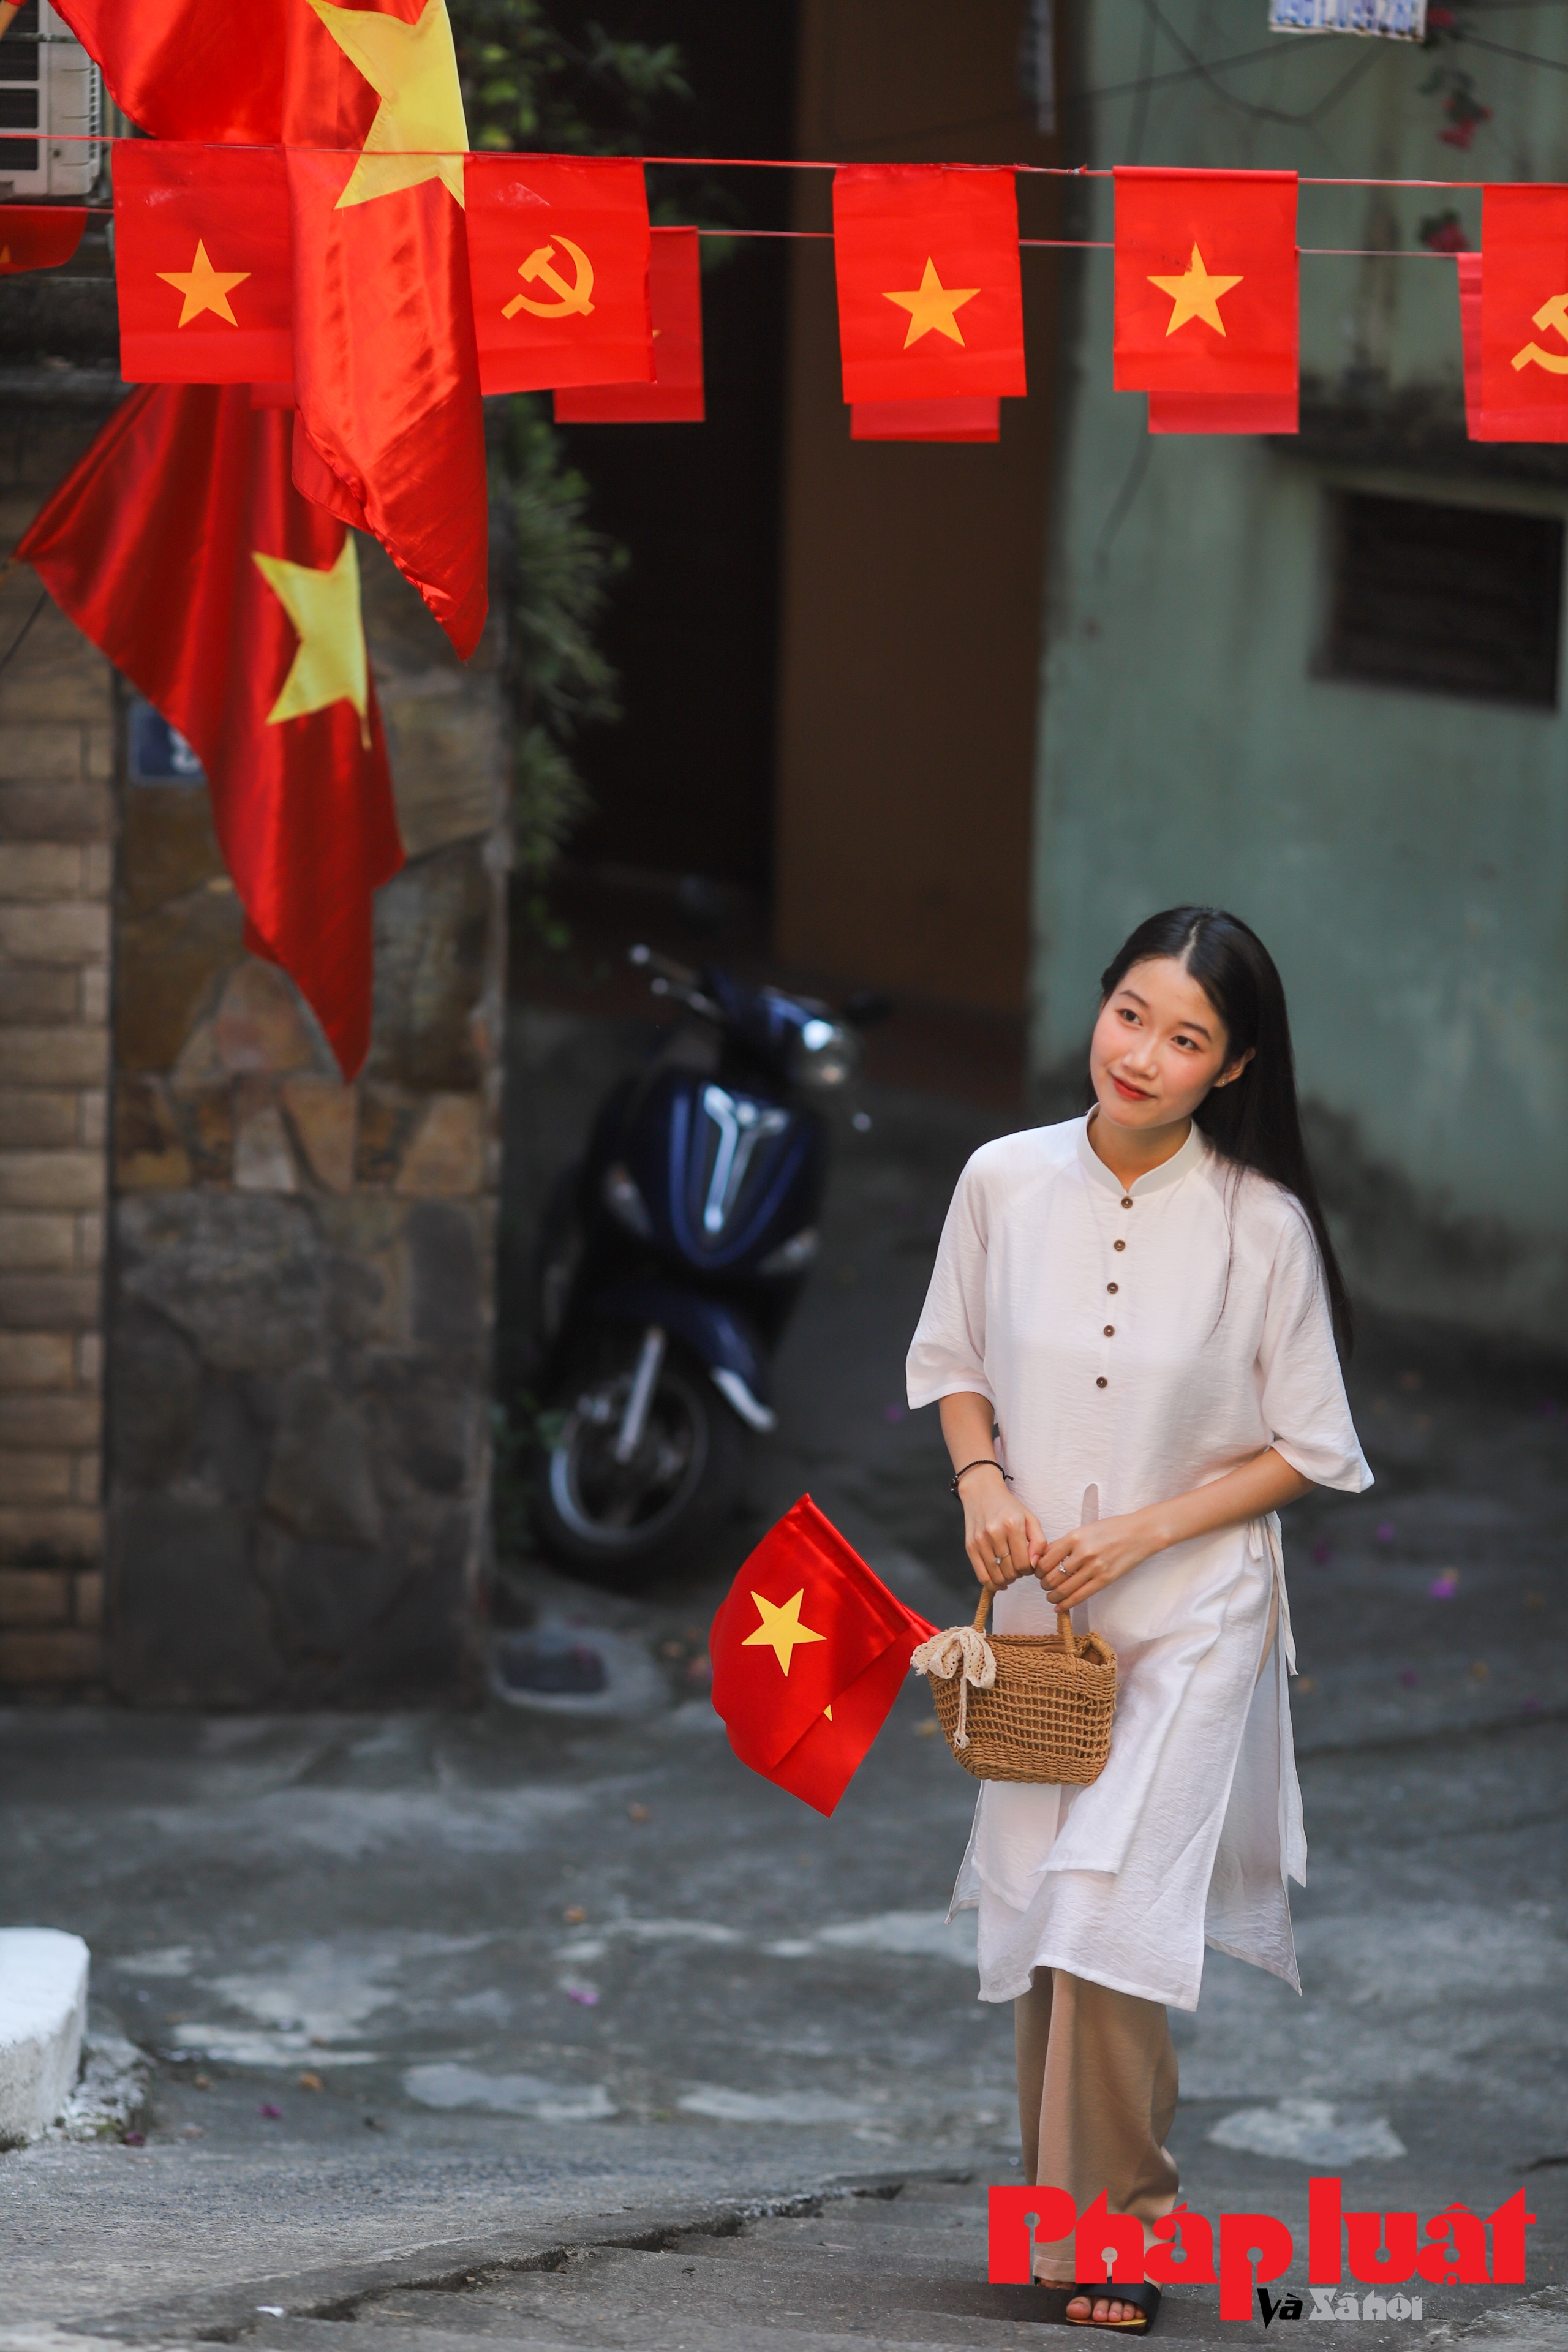 Ngõ cờ hoa rực rỡ tại Hà Nội: điểm check in mới dịp nghỉ lễ